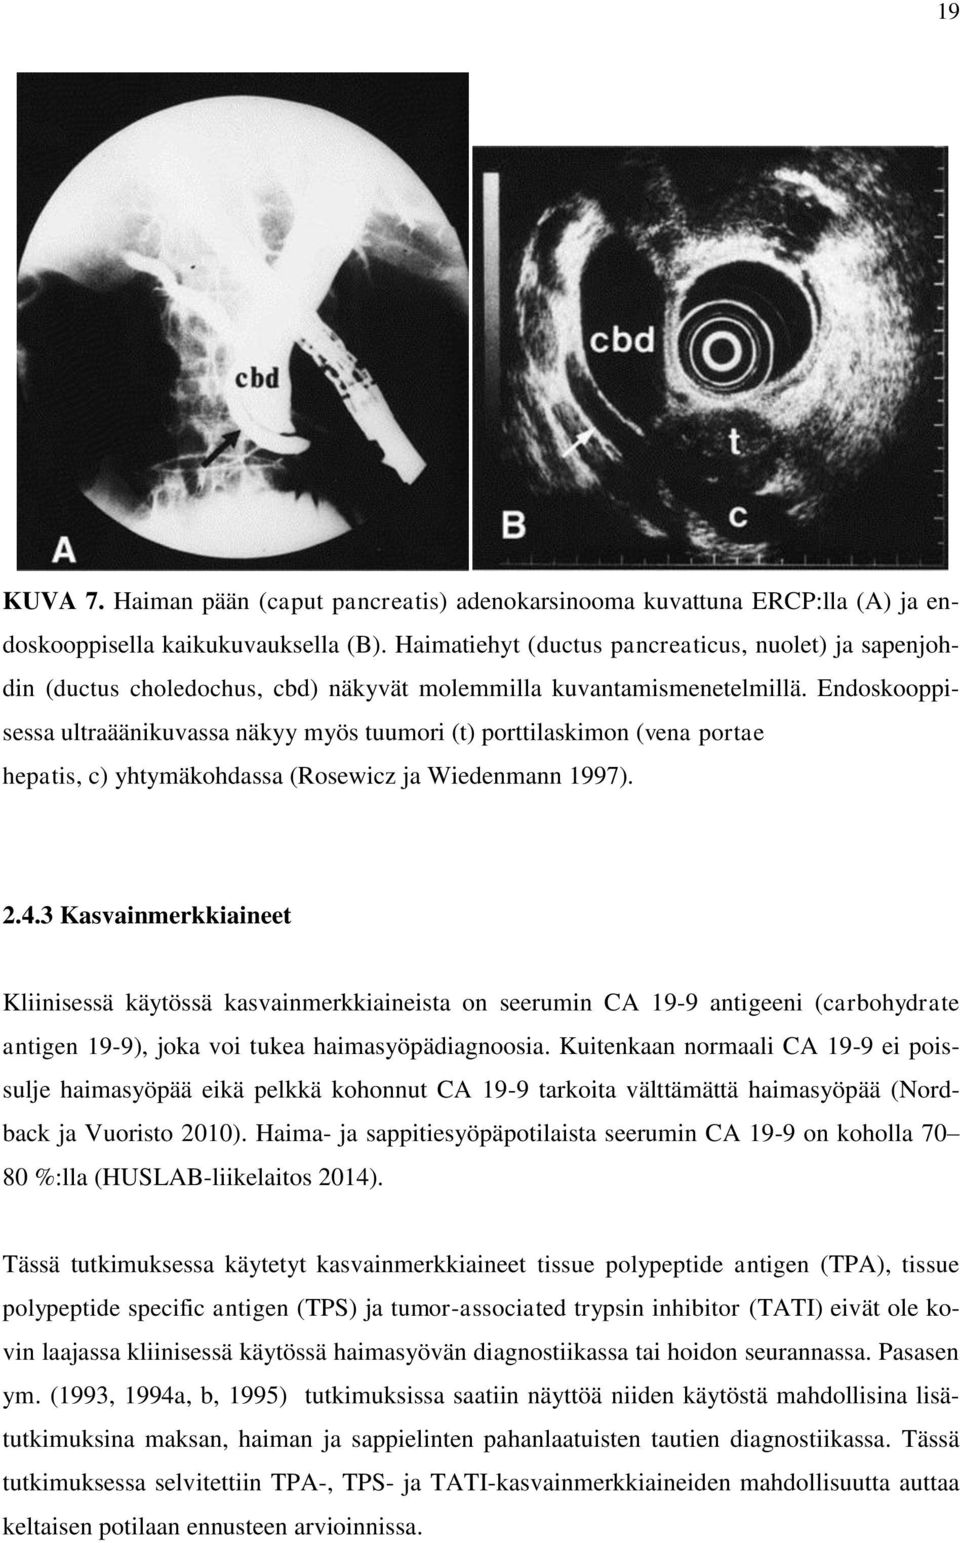 Endoskooppisessa ultraäänikuvassa näkyy myös tuumori (t) porttilaskimon (vena portae hepatis, c) yhtymäkohdassa (Rosewicz ja Wiedenmann 1997). 2.4.